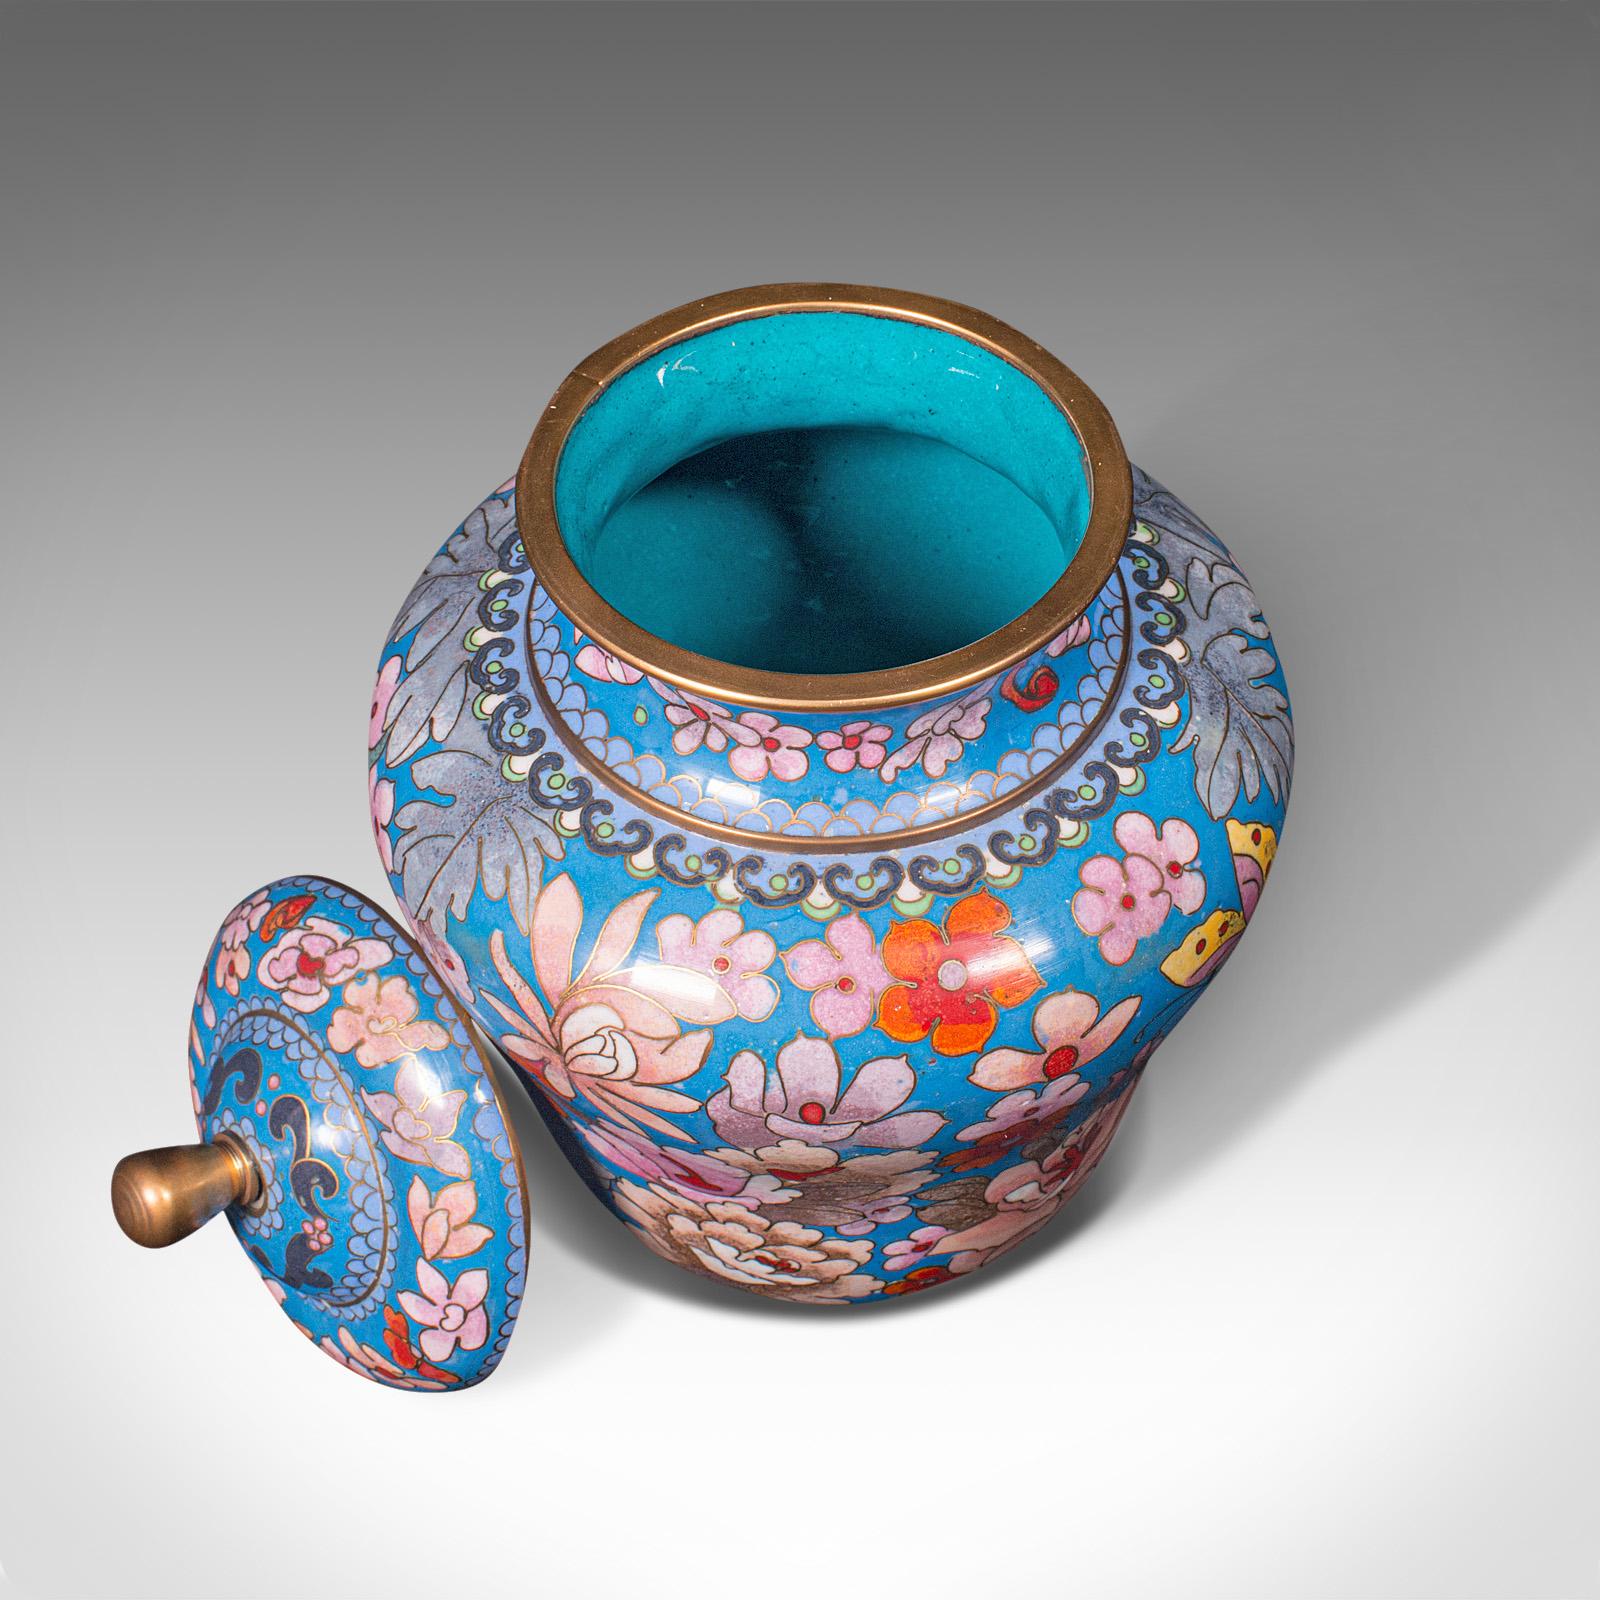 Pair of Antique Cloisonne Spice Jars, English Ceramic, Decorative Pot, Victorian For Sale 1